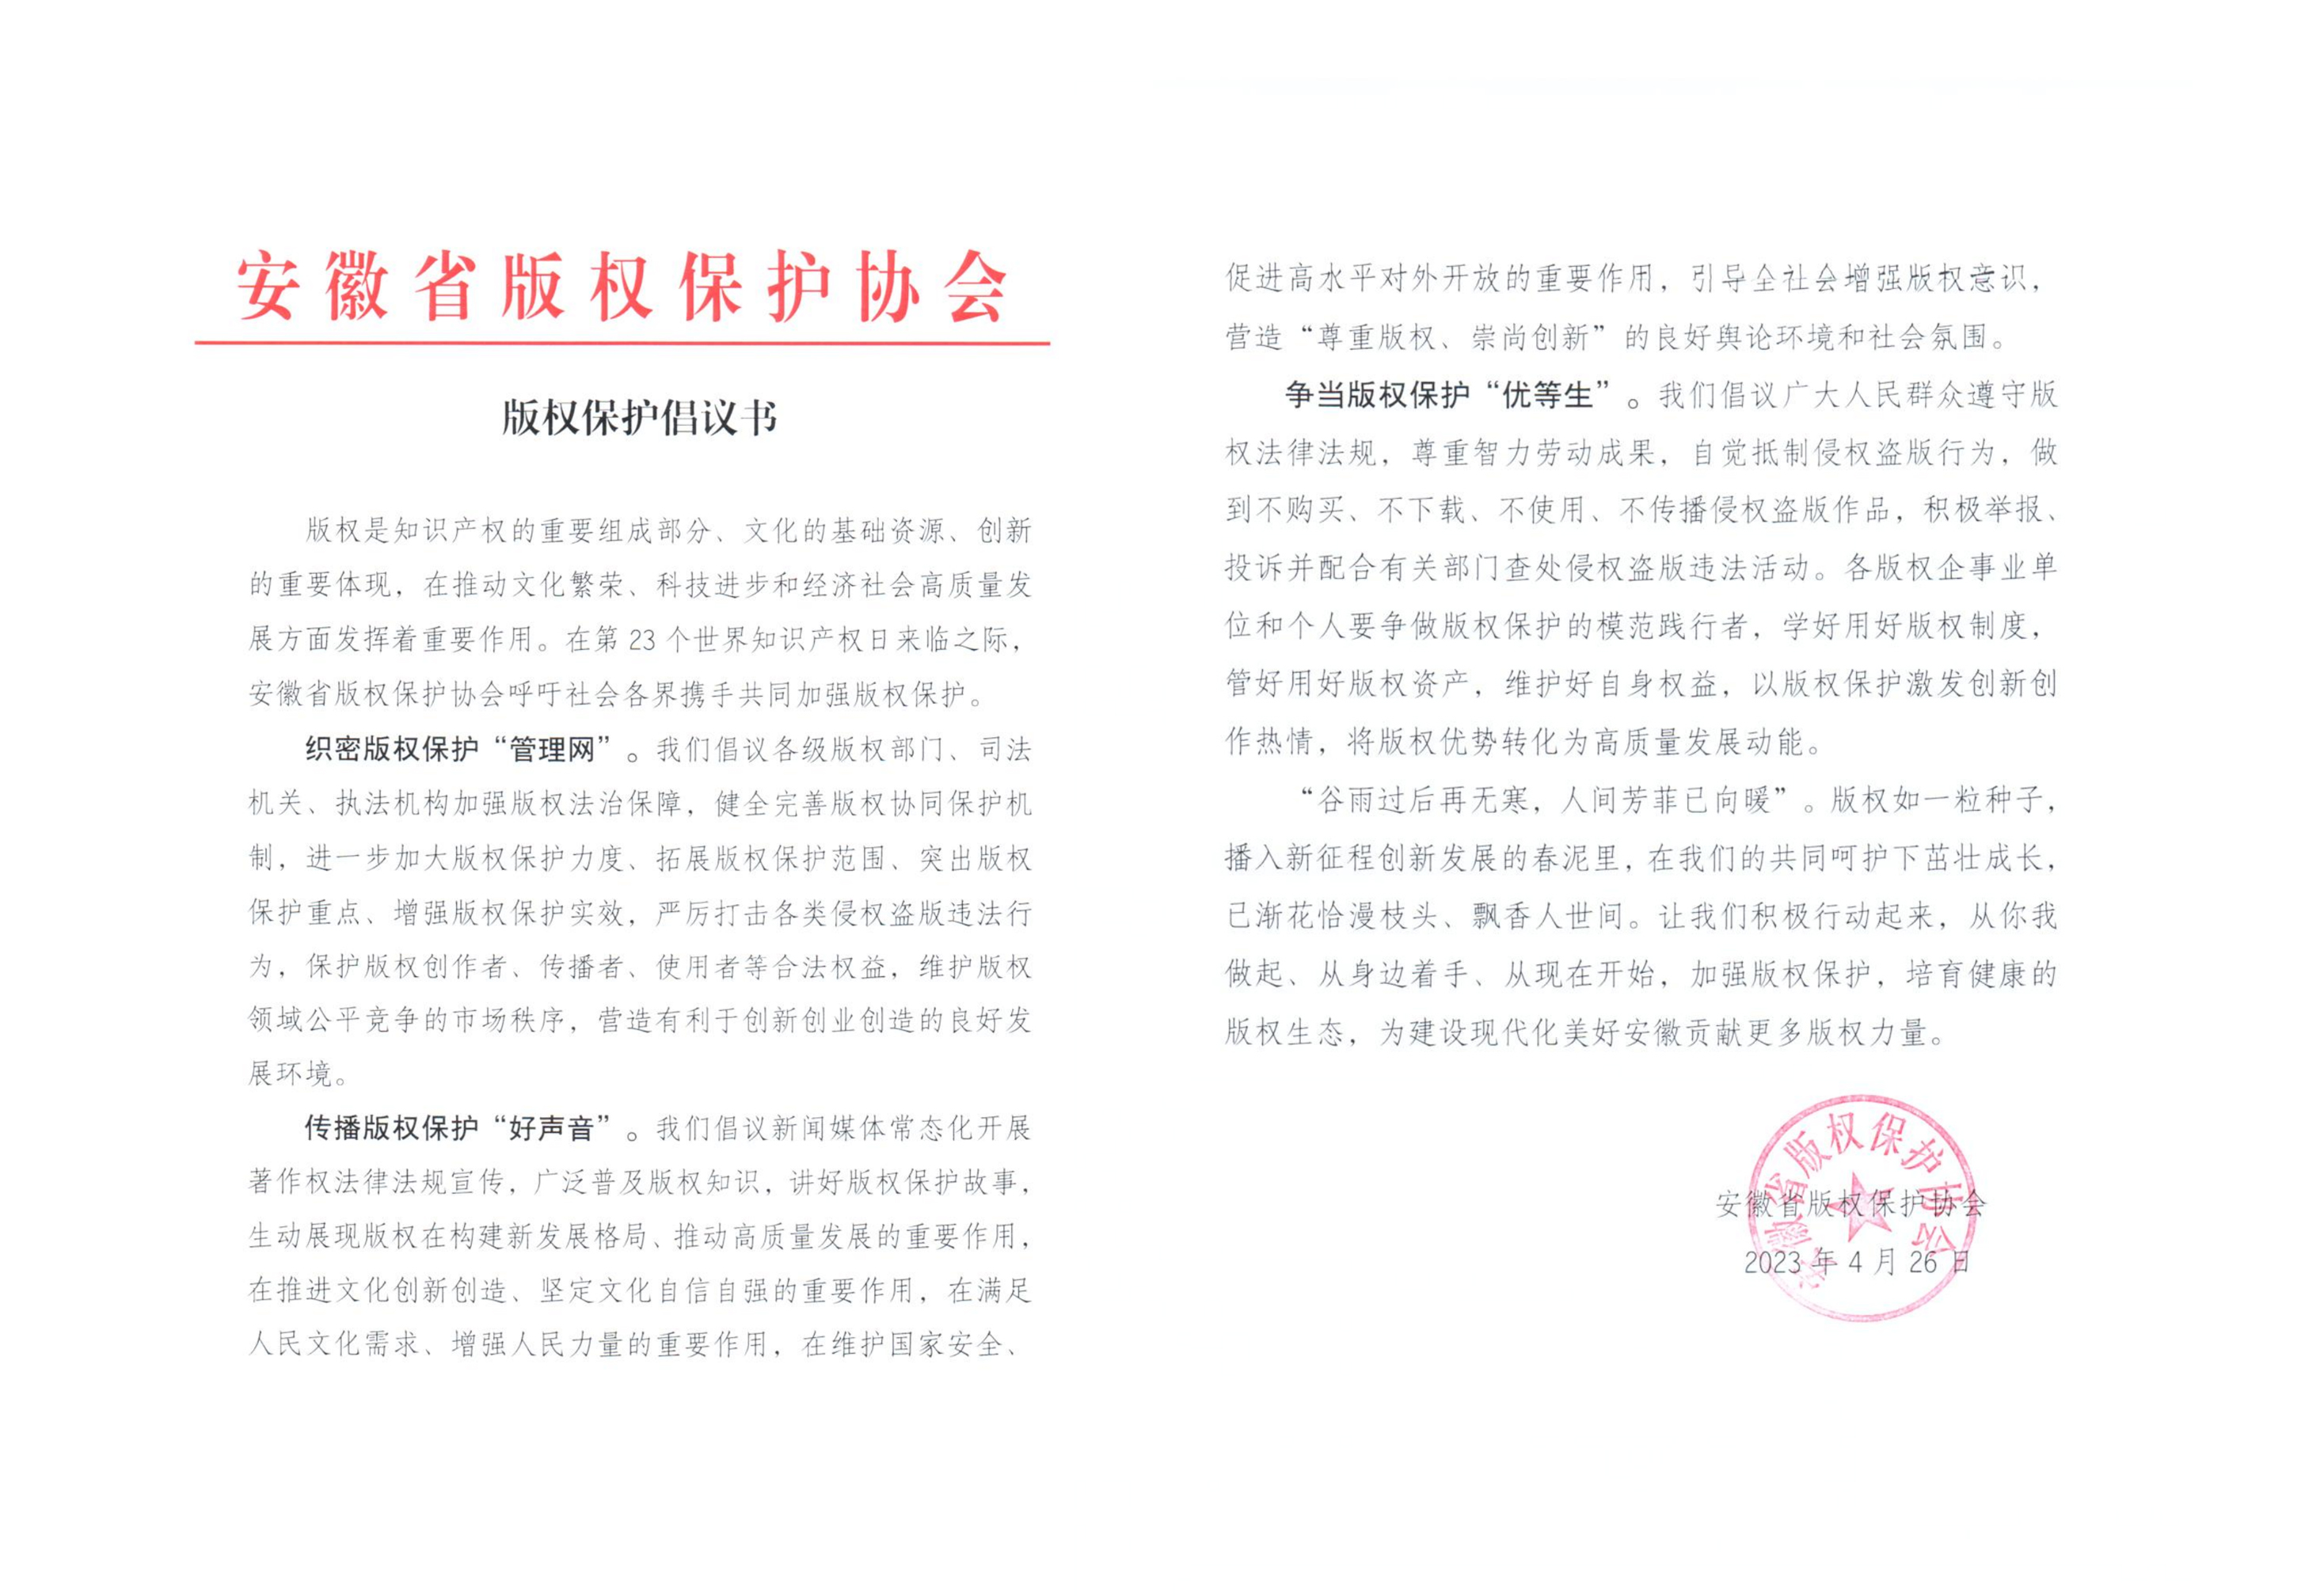 安徽省版权保护协会发布版权保护倡议书